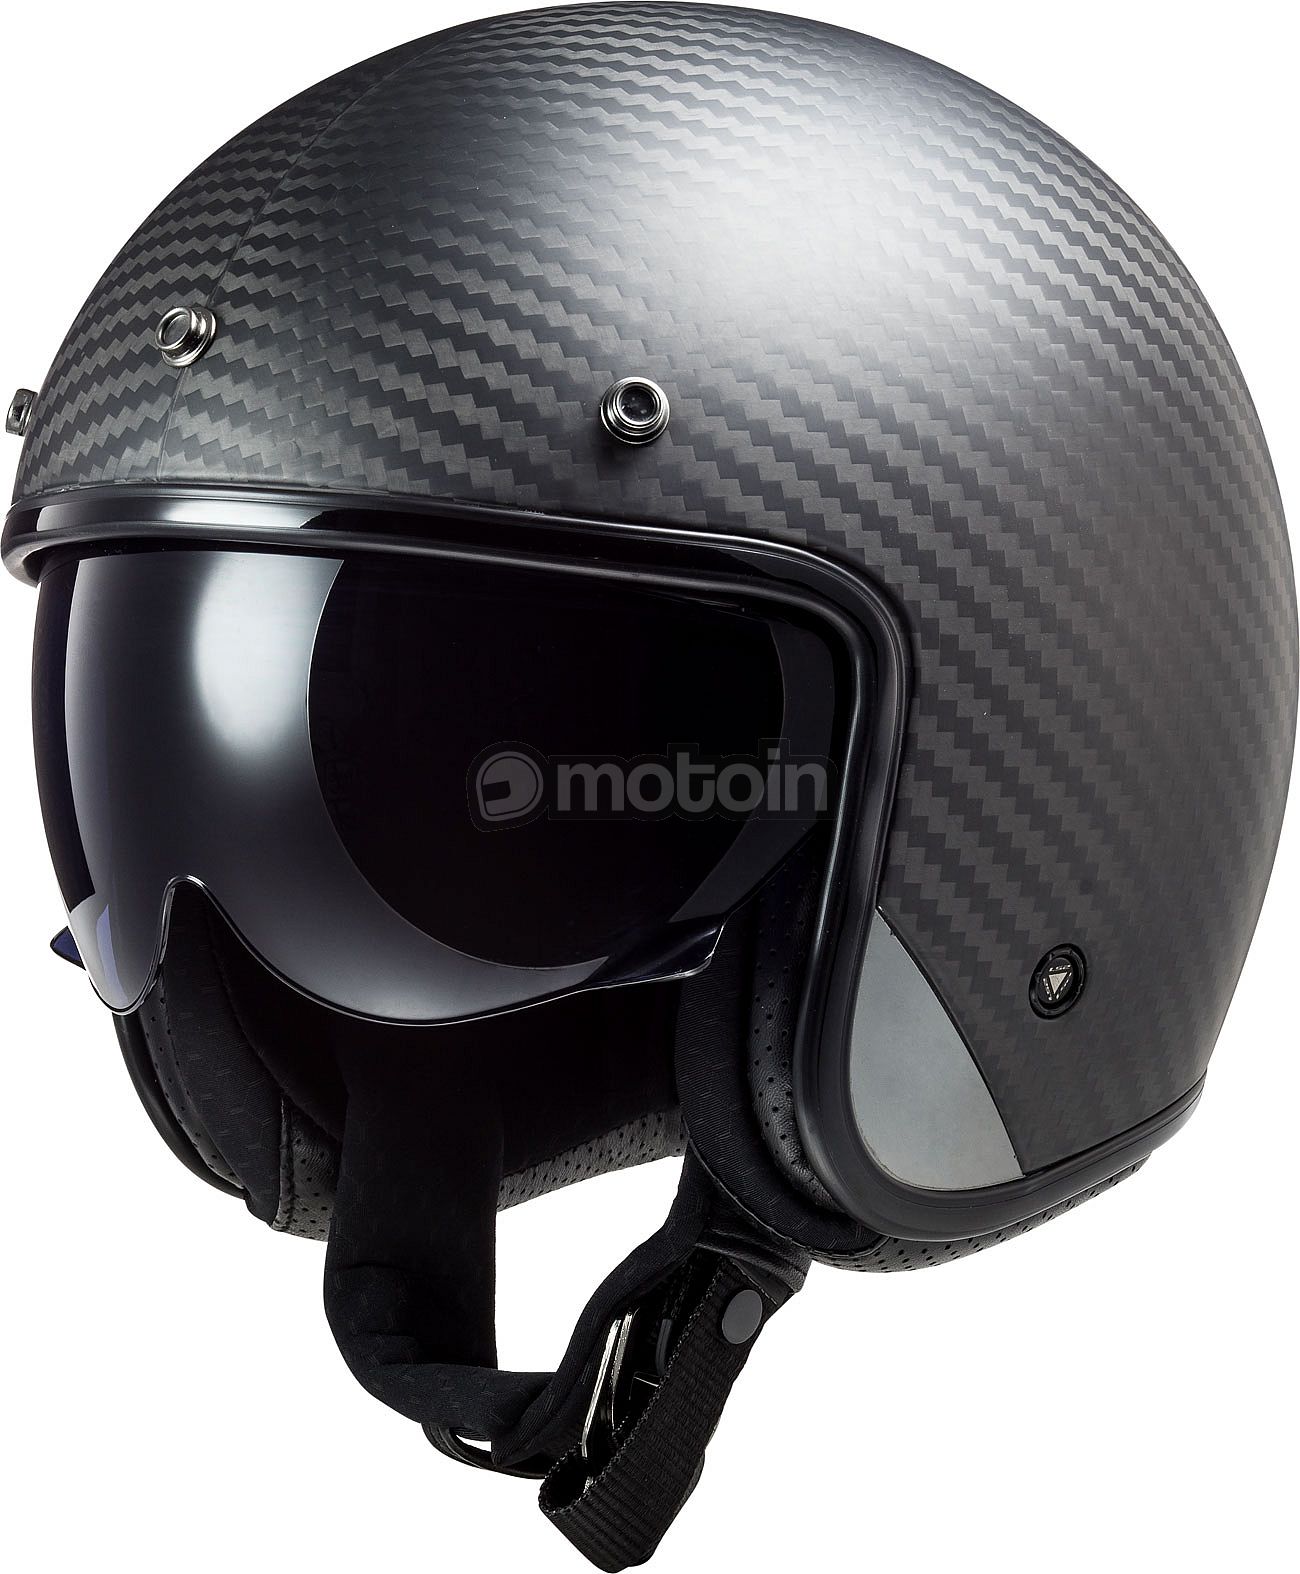 LS2 OF601 Bob II Carbon, capacete a jato